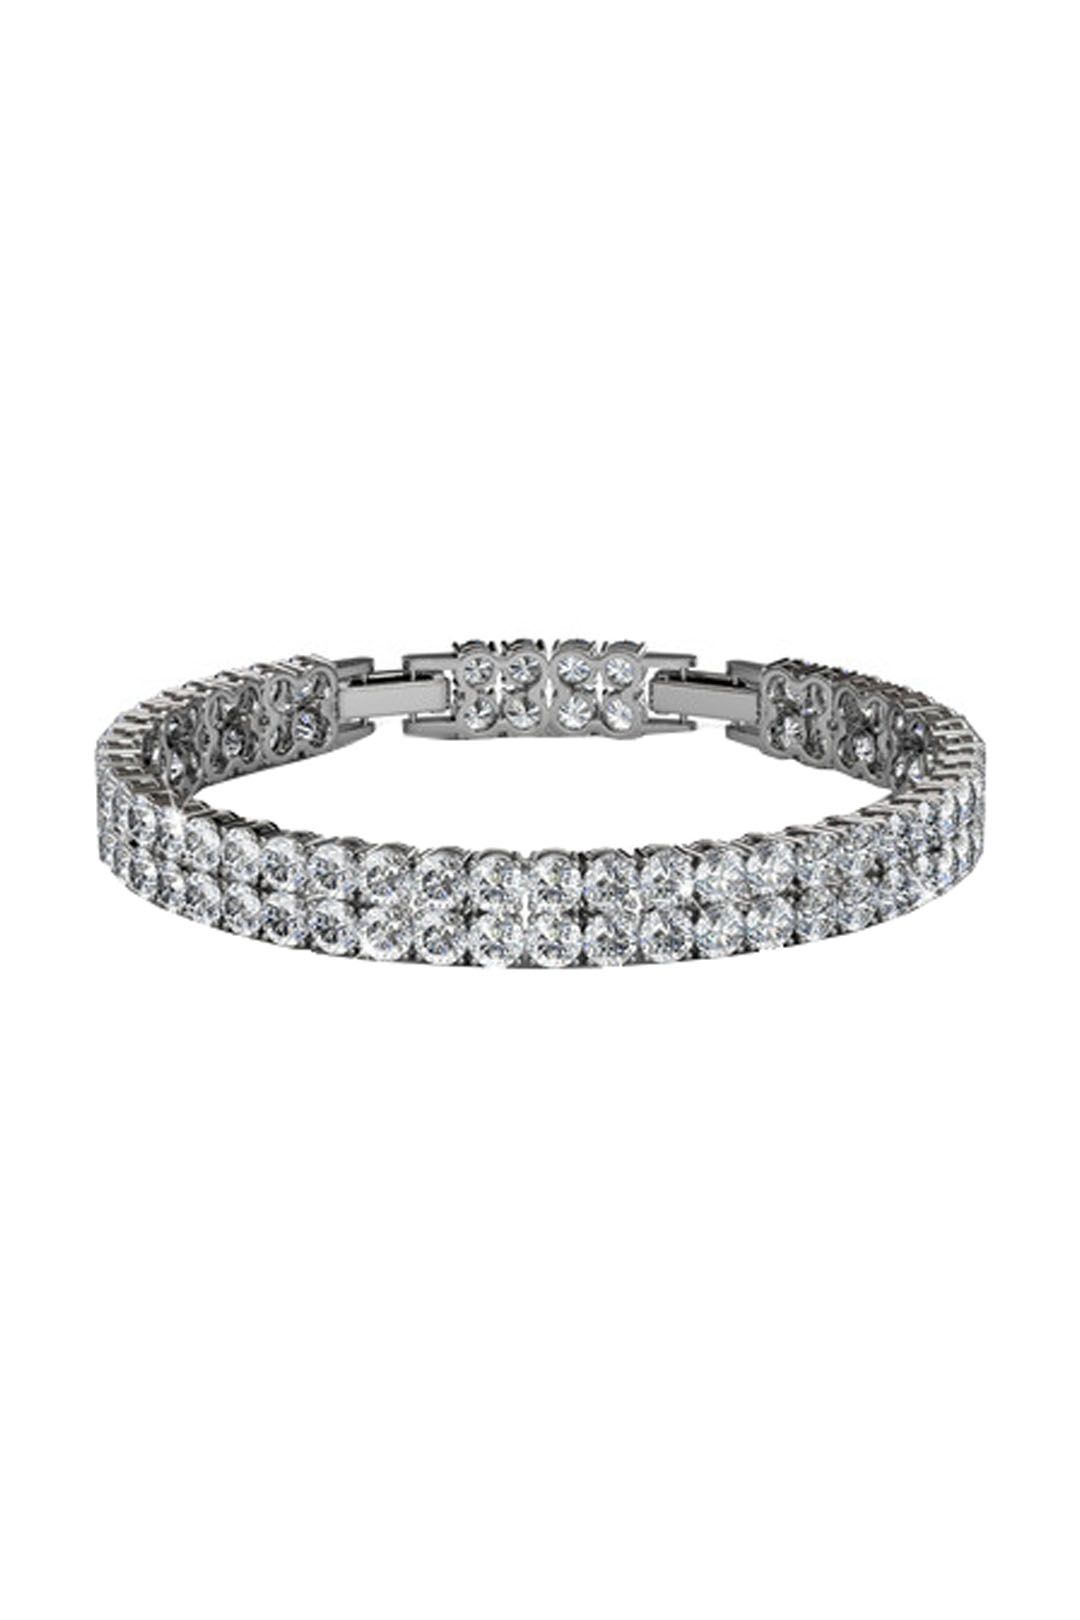 Krystal Couture - Jubilee Bracelet - Silver - Front